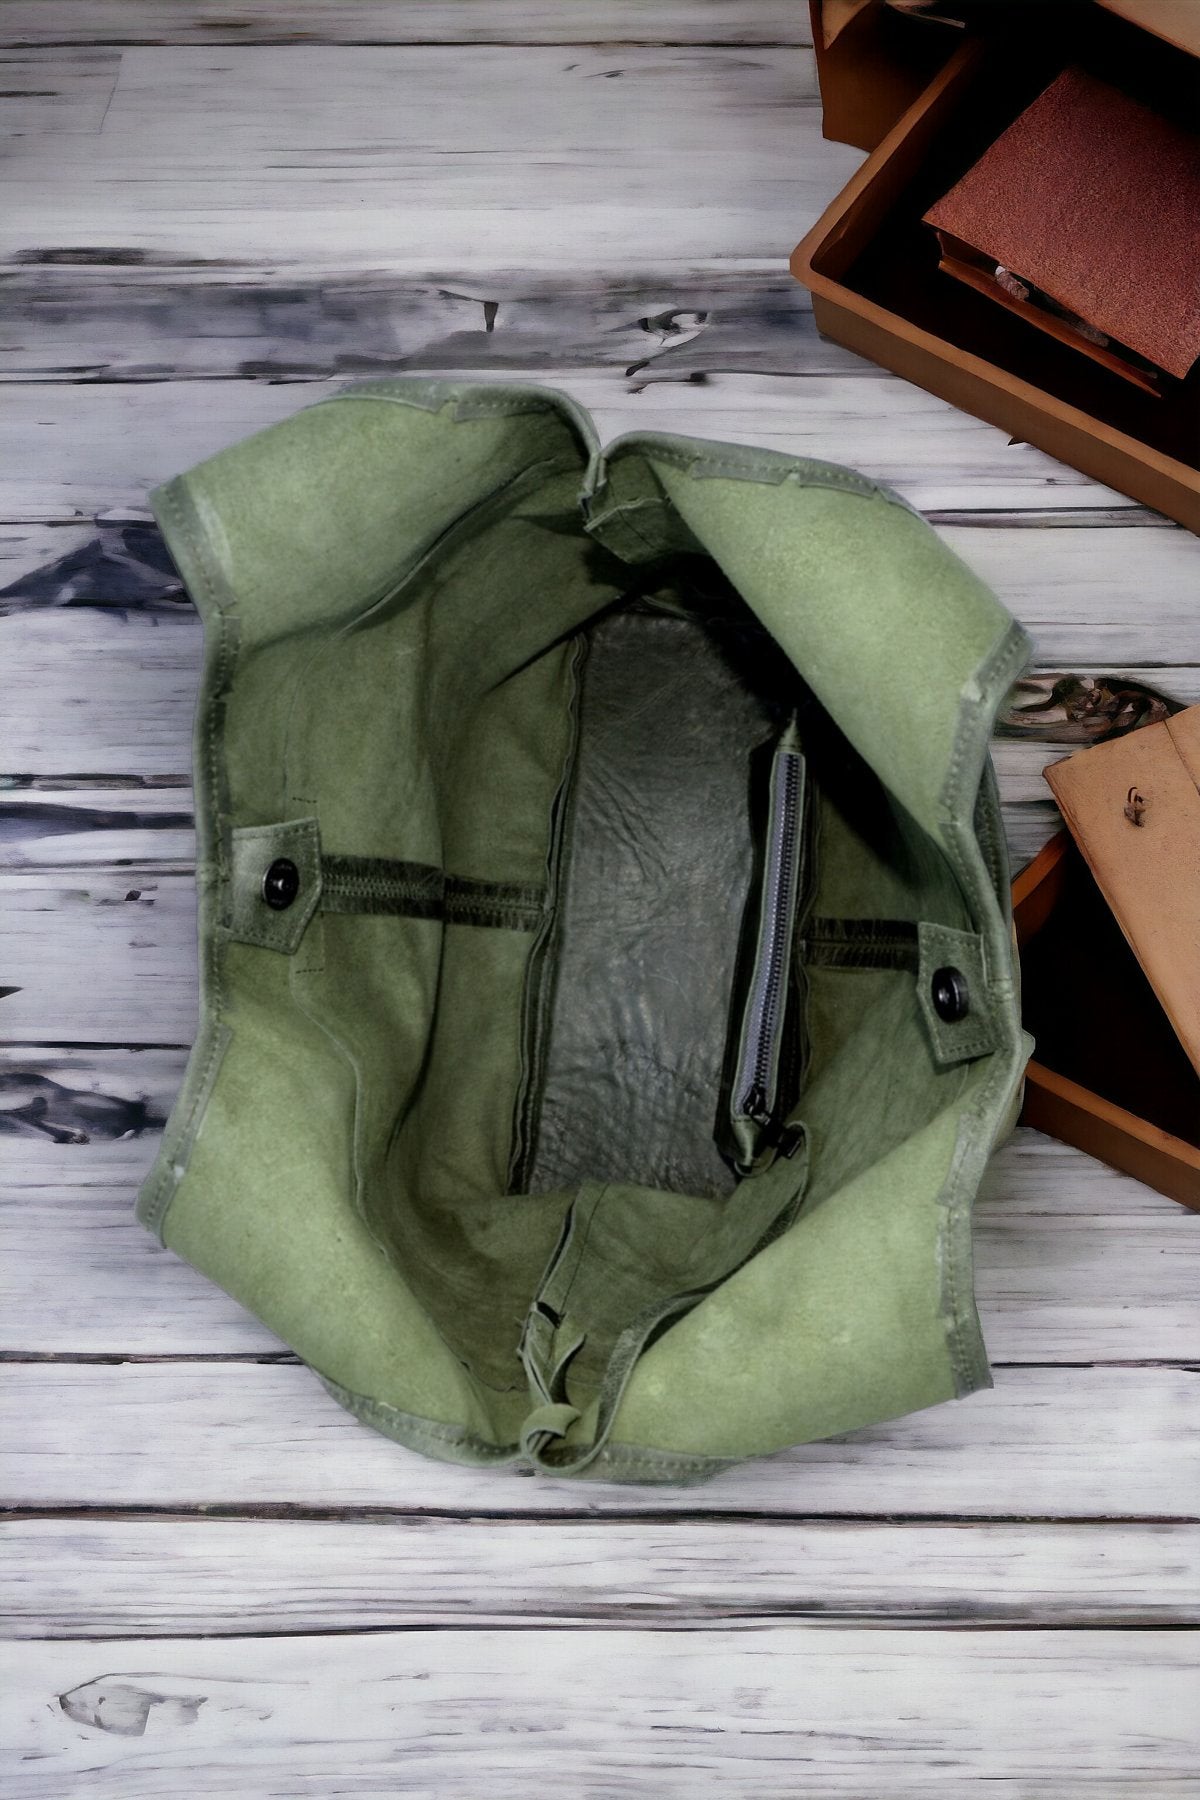 Genuine Leather Shoulder Bag - 9 Color Options  99percenthandmade   